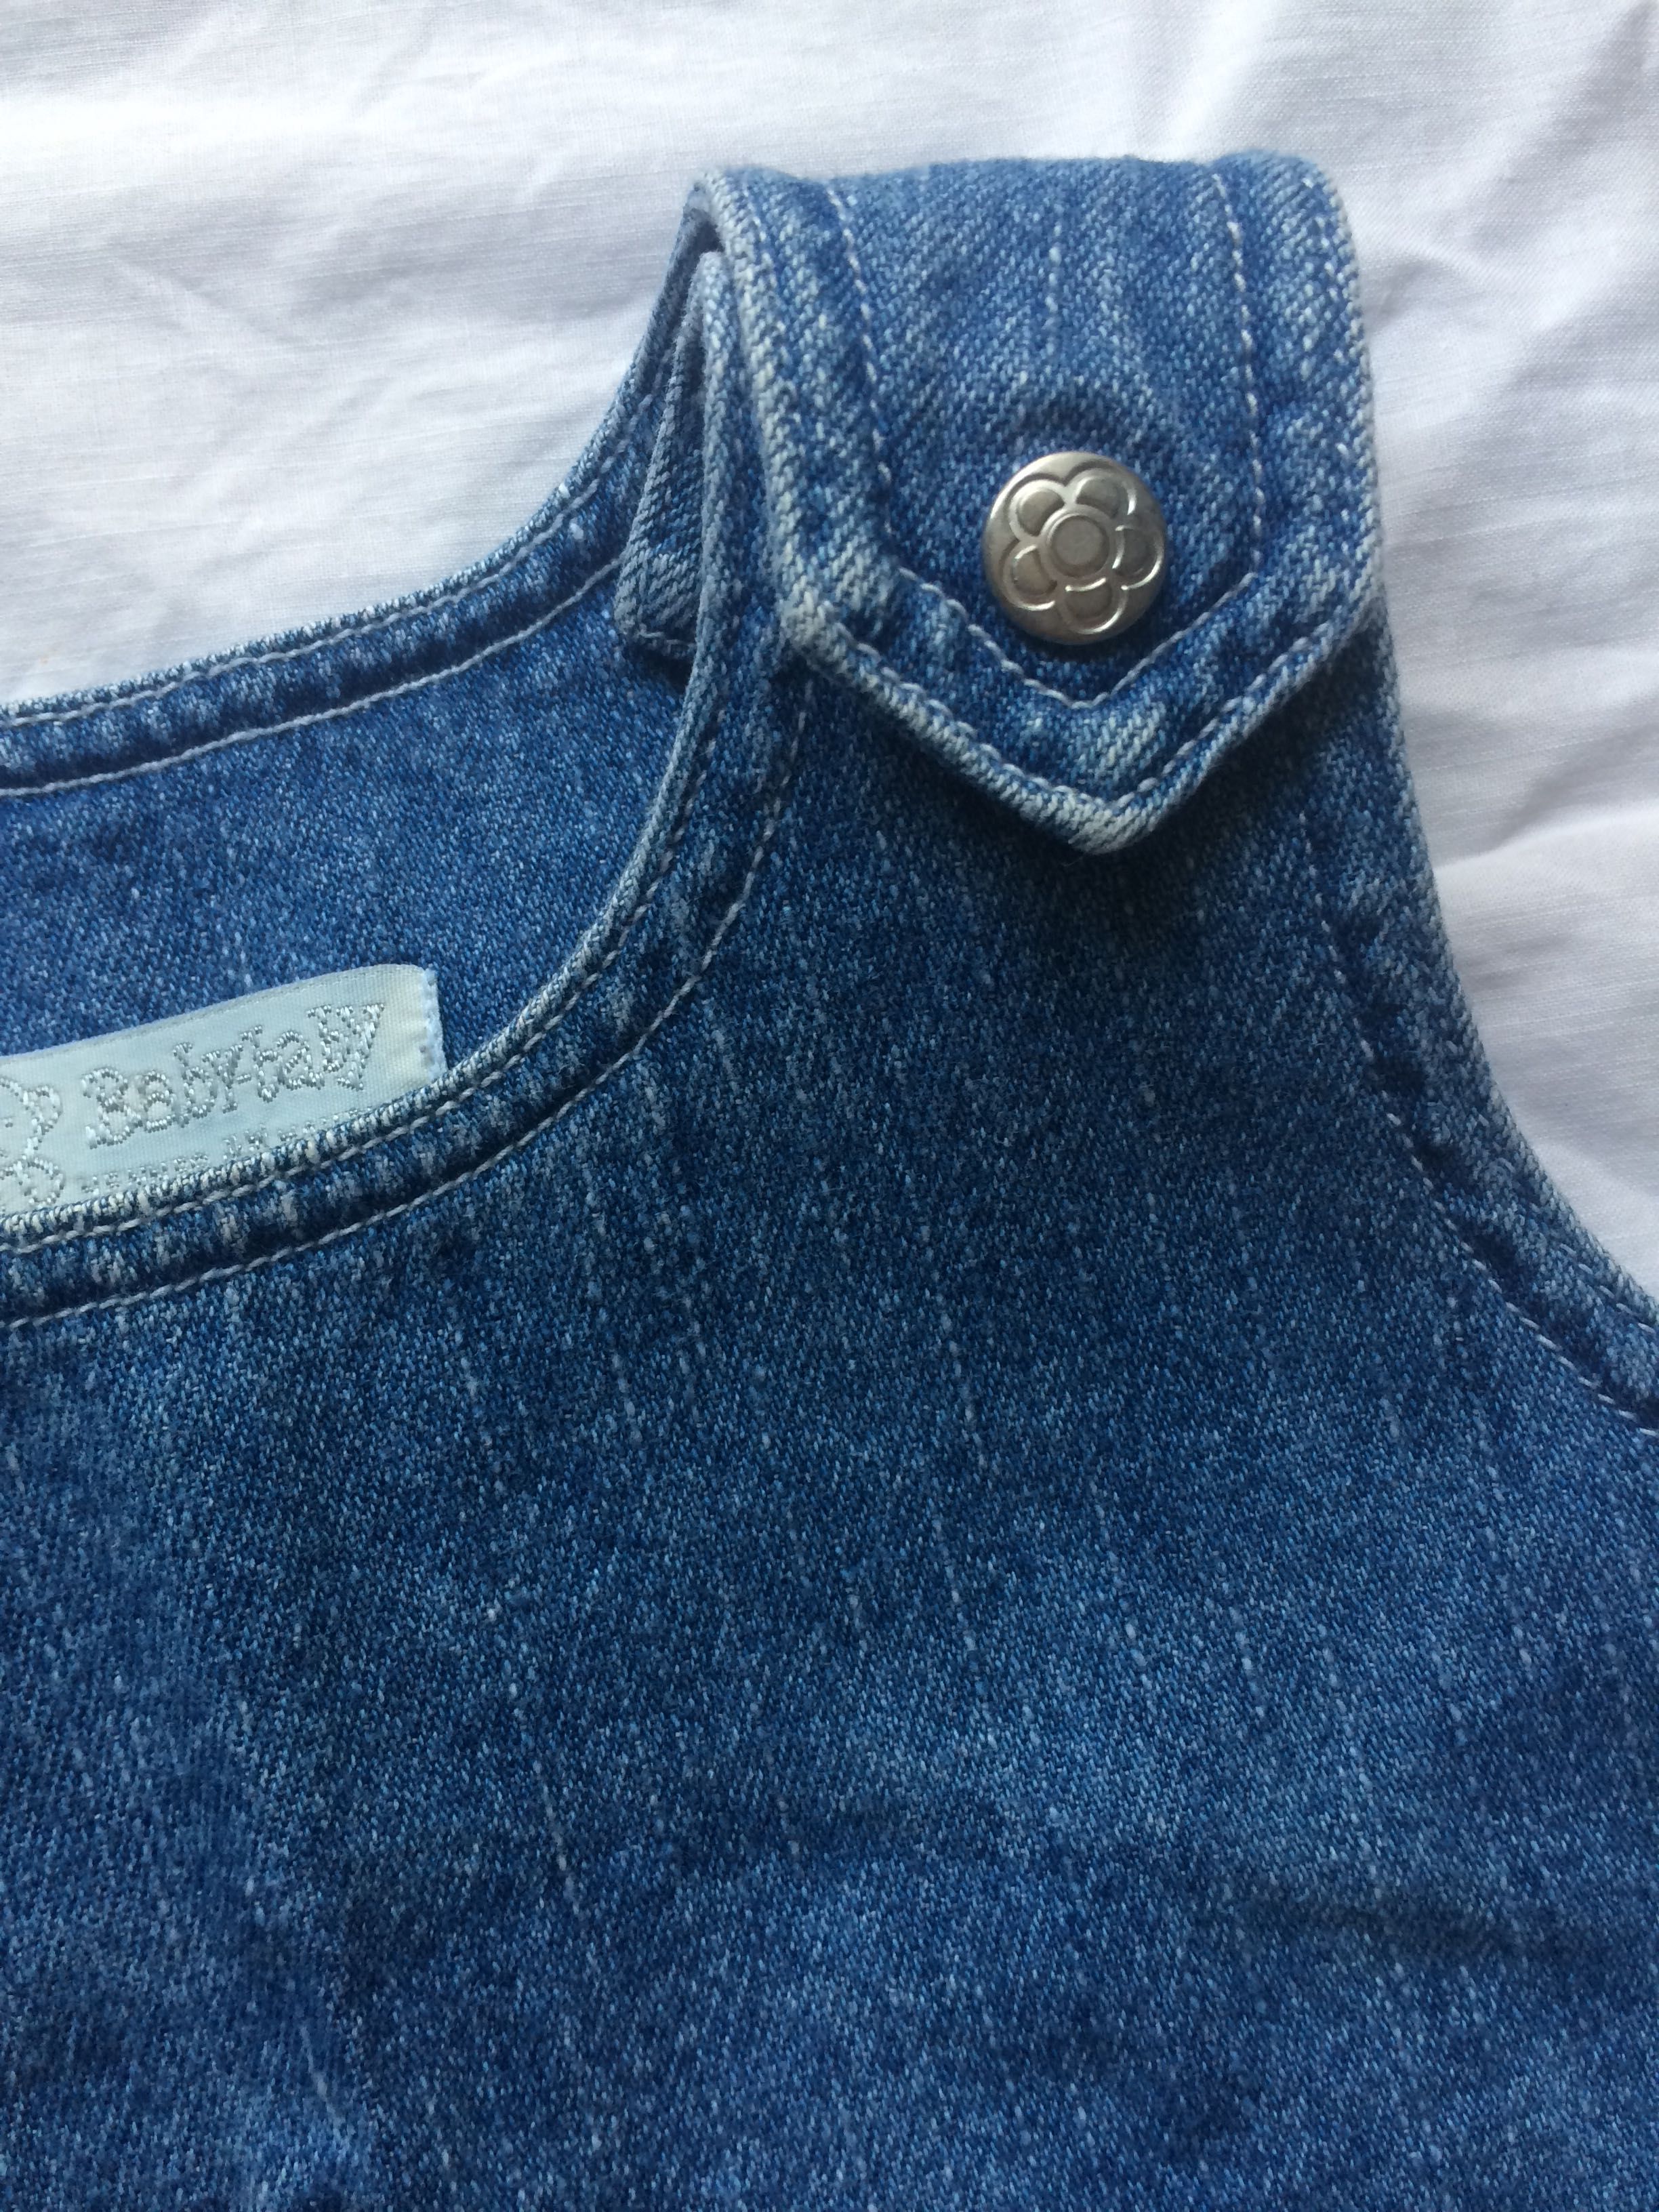 H&M сарафан  из США платье джинсовое детское